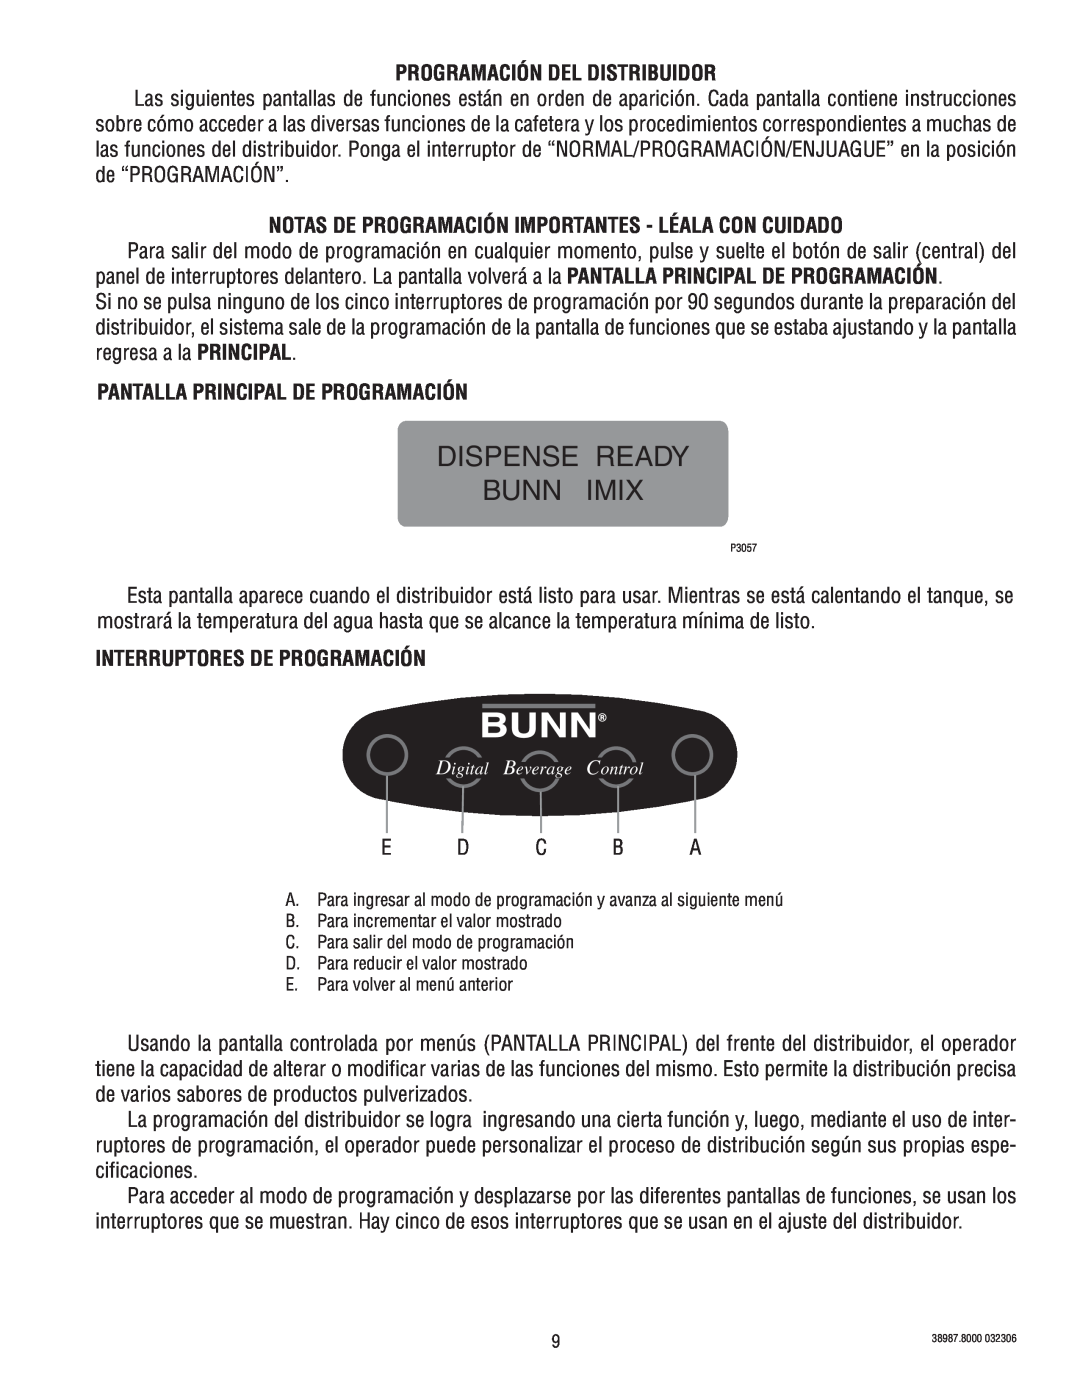 Bunn 5S+A Programación Del Distribuidor, Notas De Programación Importantes - Léala Con Cuidado, Dispense Ready Bunn Imix 